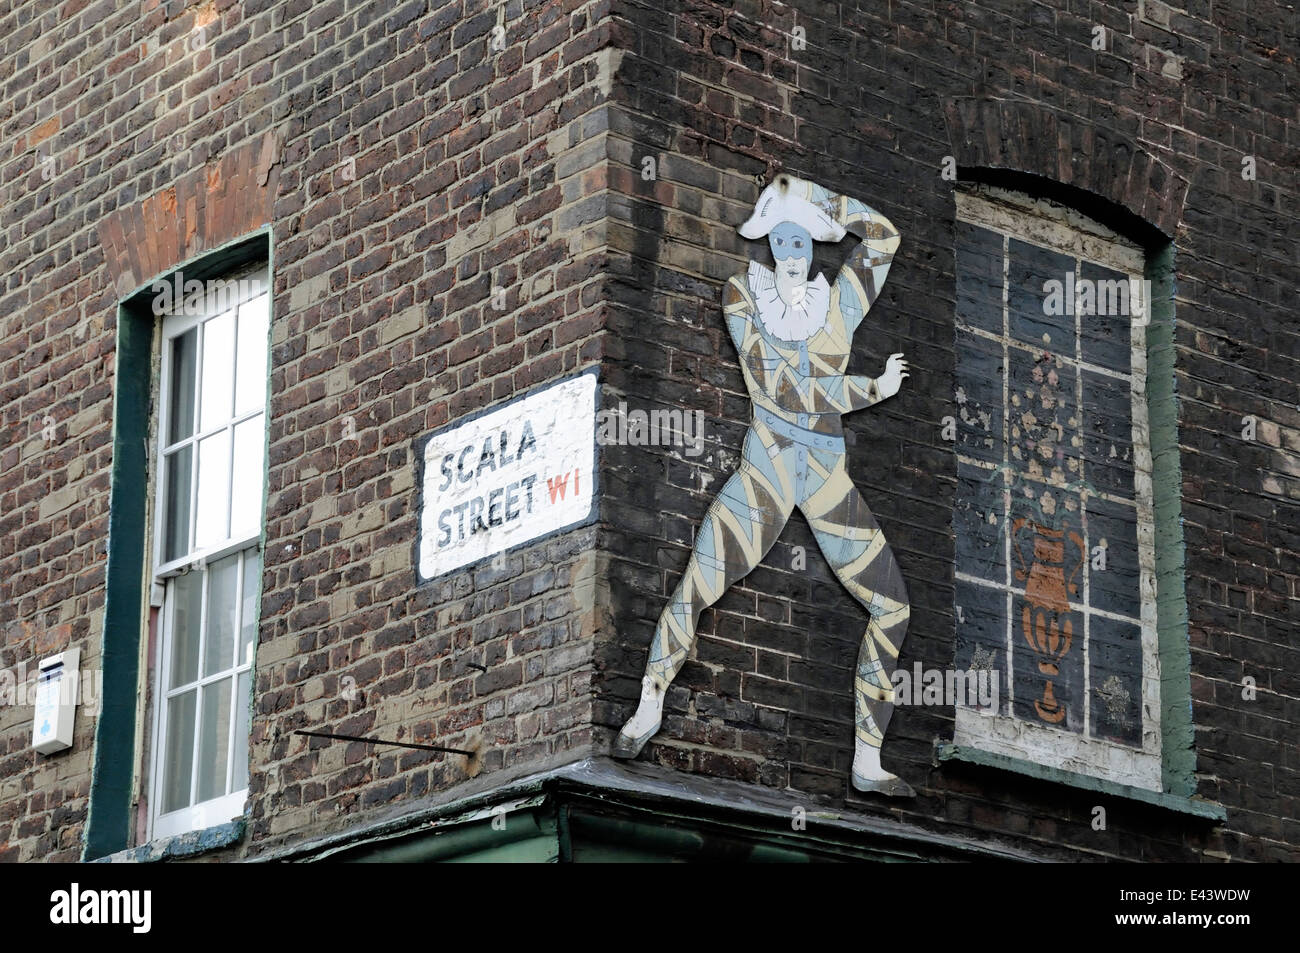 Scala Street W1 Schild mit Jester Ausschnitt oben Pollocks Spielzeugmuseum, London England Großbritannien UK Stockfoto